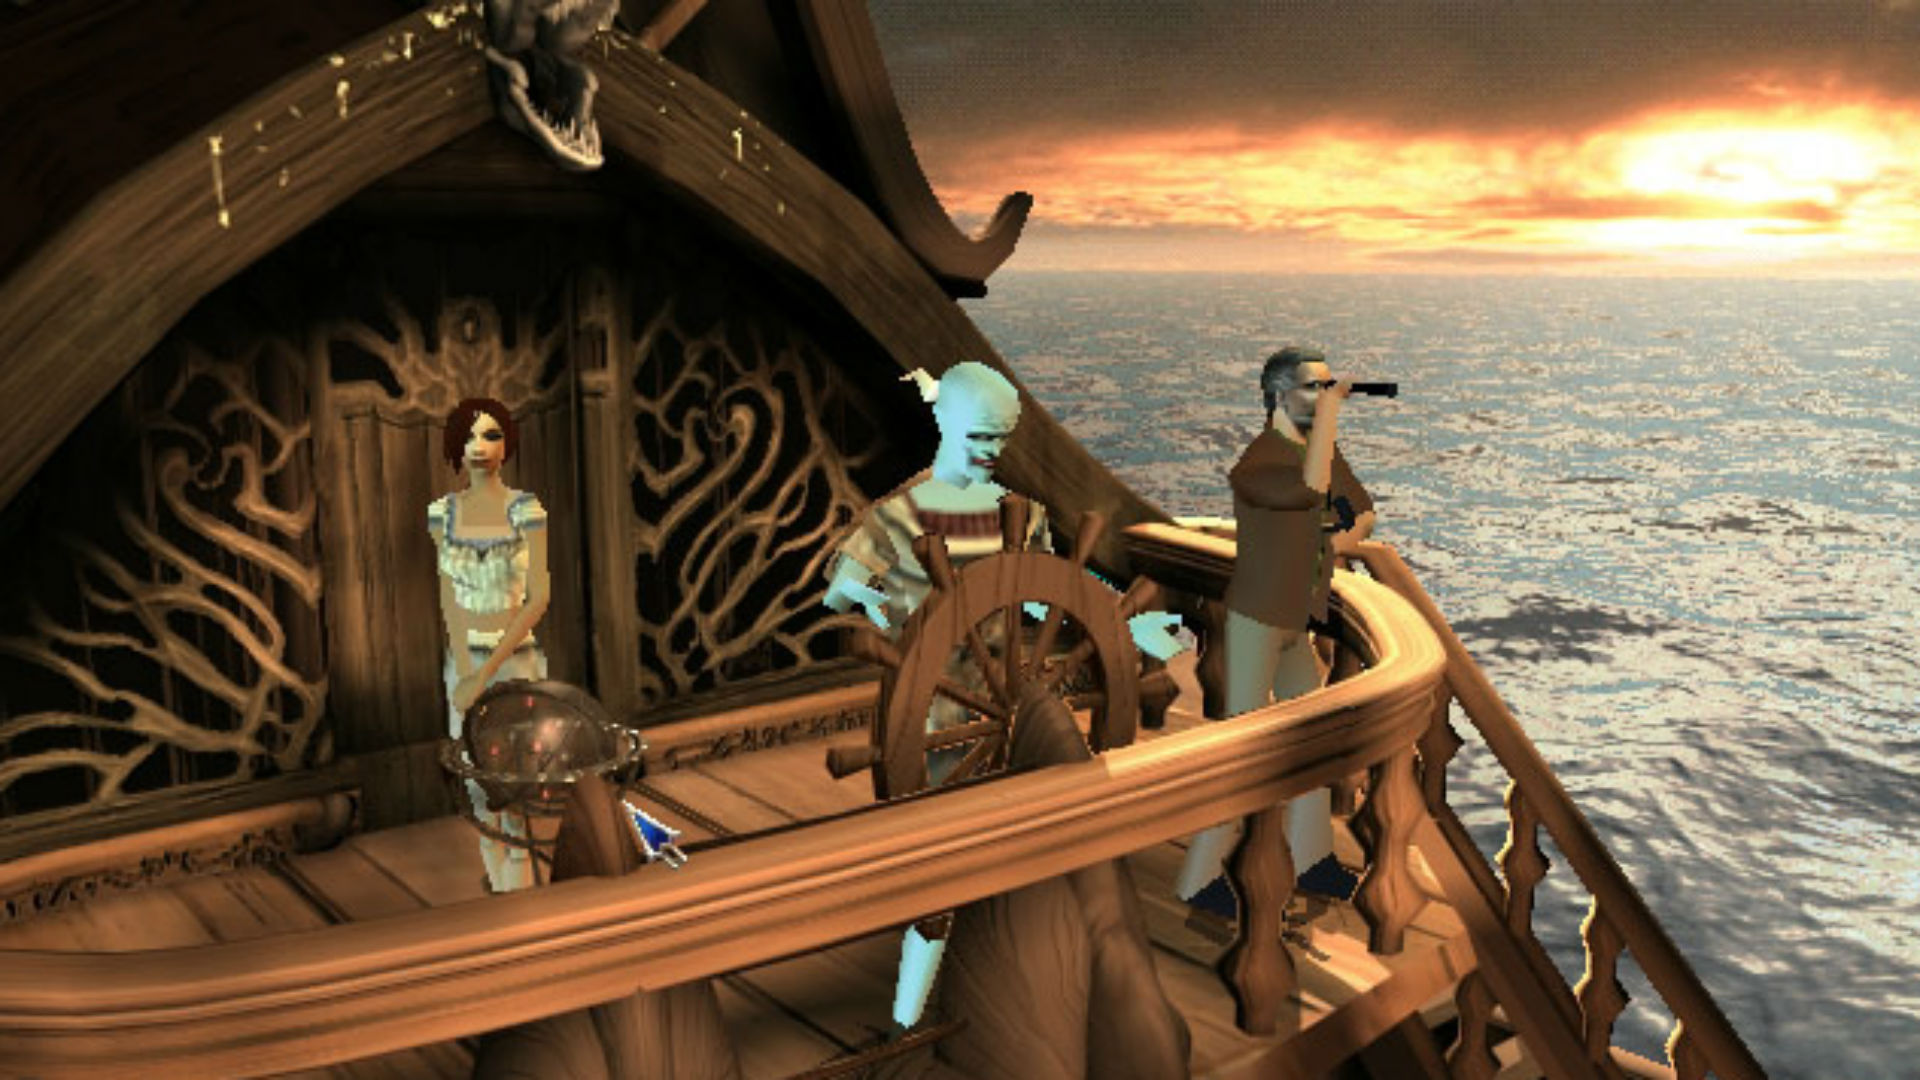 מגוון של דמויות מסקרנות בראש ספינה במסע הארוך ביותר, אחד המשחקים הישנים הטובים ביותר